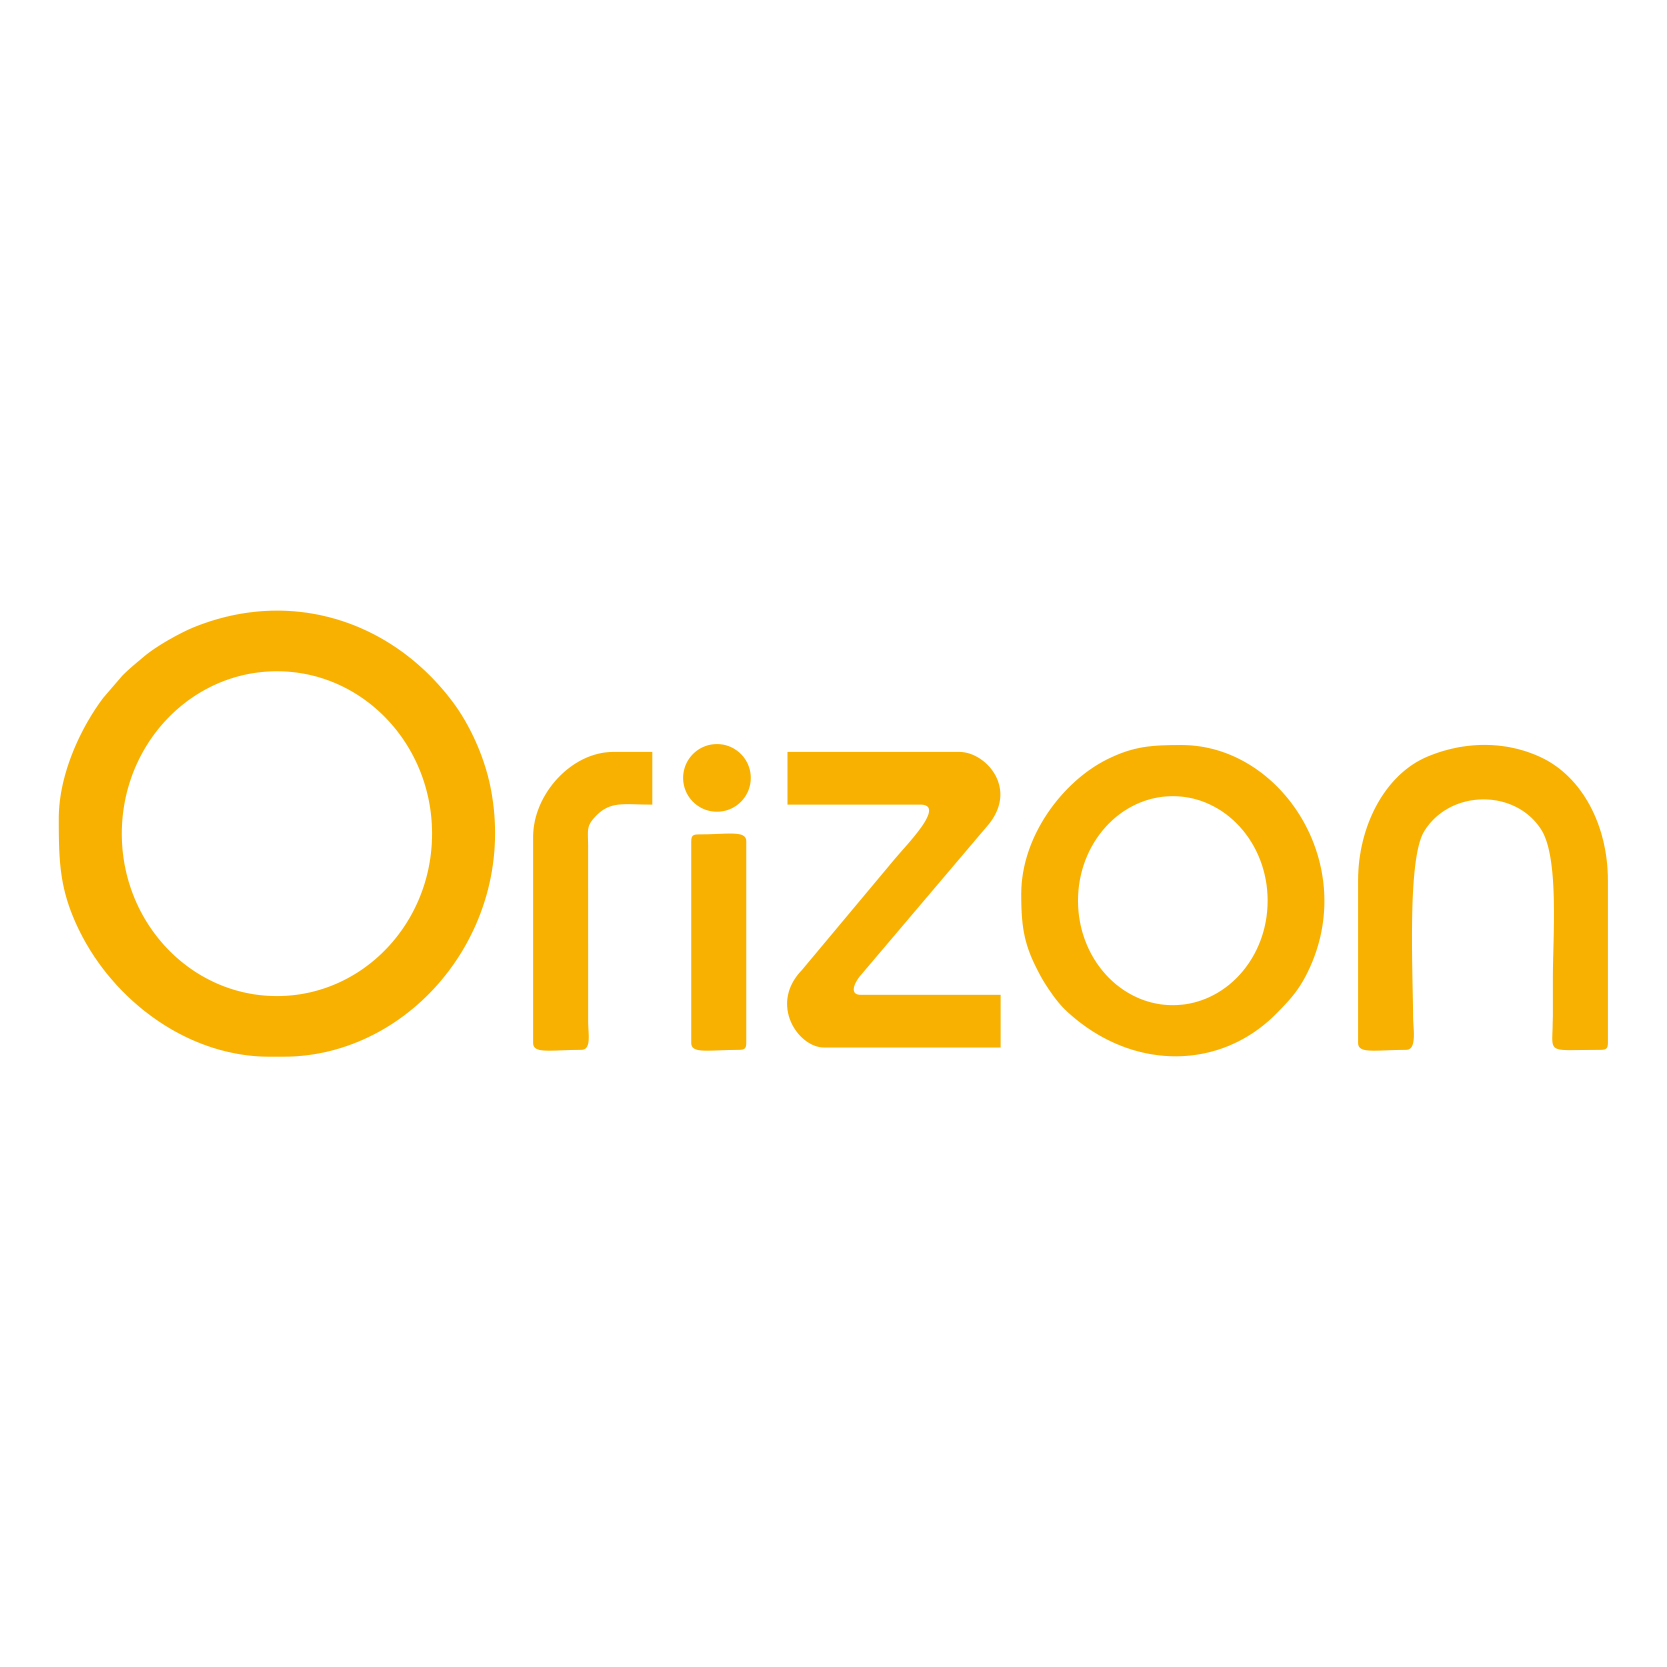 ORIZON